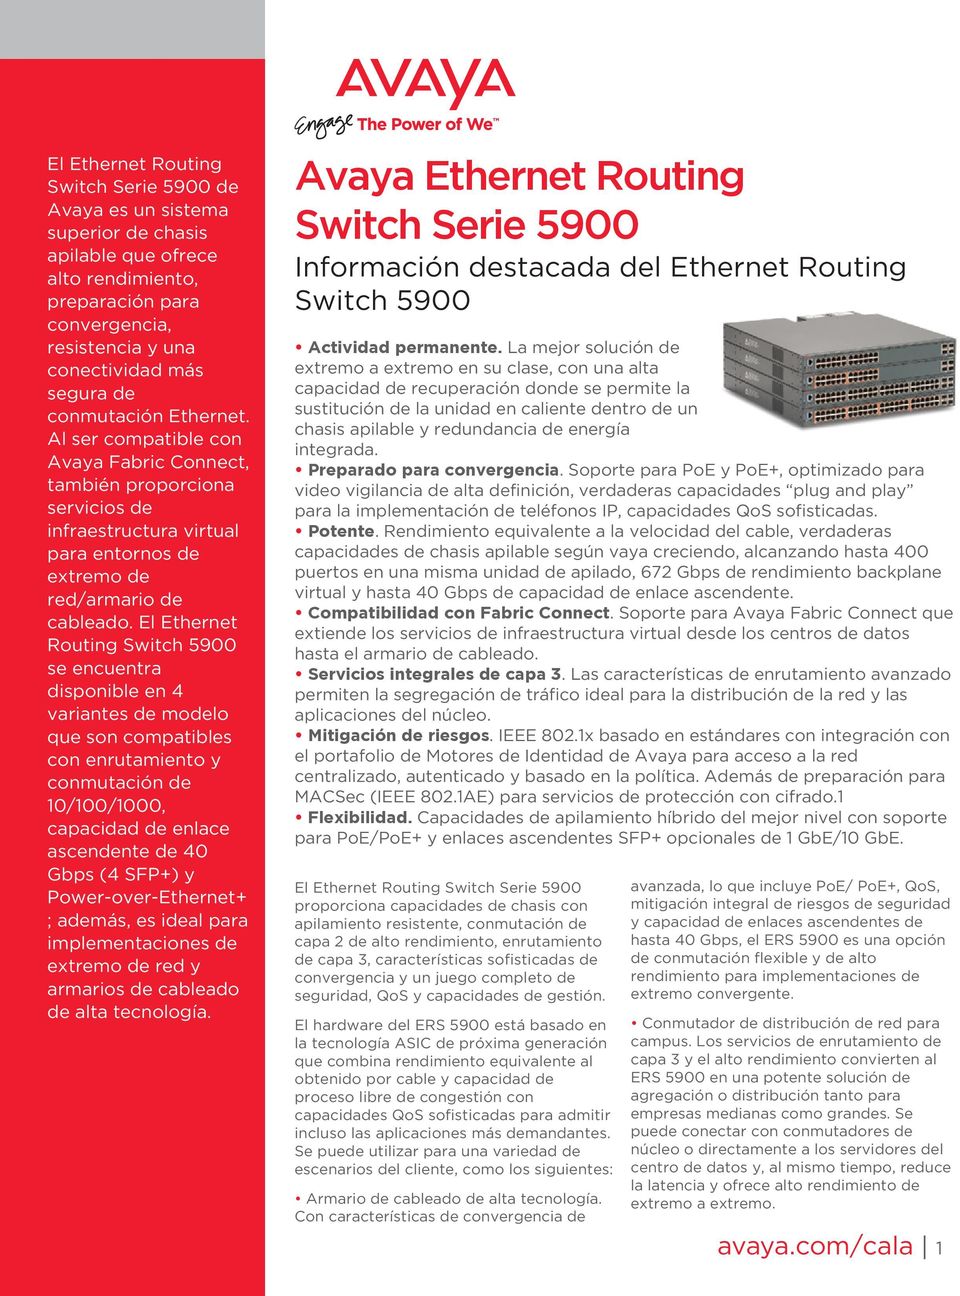 El Ethernet Routing Switch 5900 se encuentra disponible en 4 variantes de modelo que son compatibles con enrutamiento y conmutación de 10/100/1000, capacidad de enlace ascendente de 40 Gbps (4 SFP+)